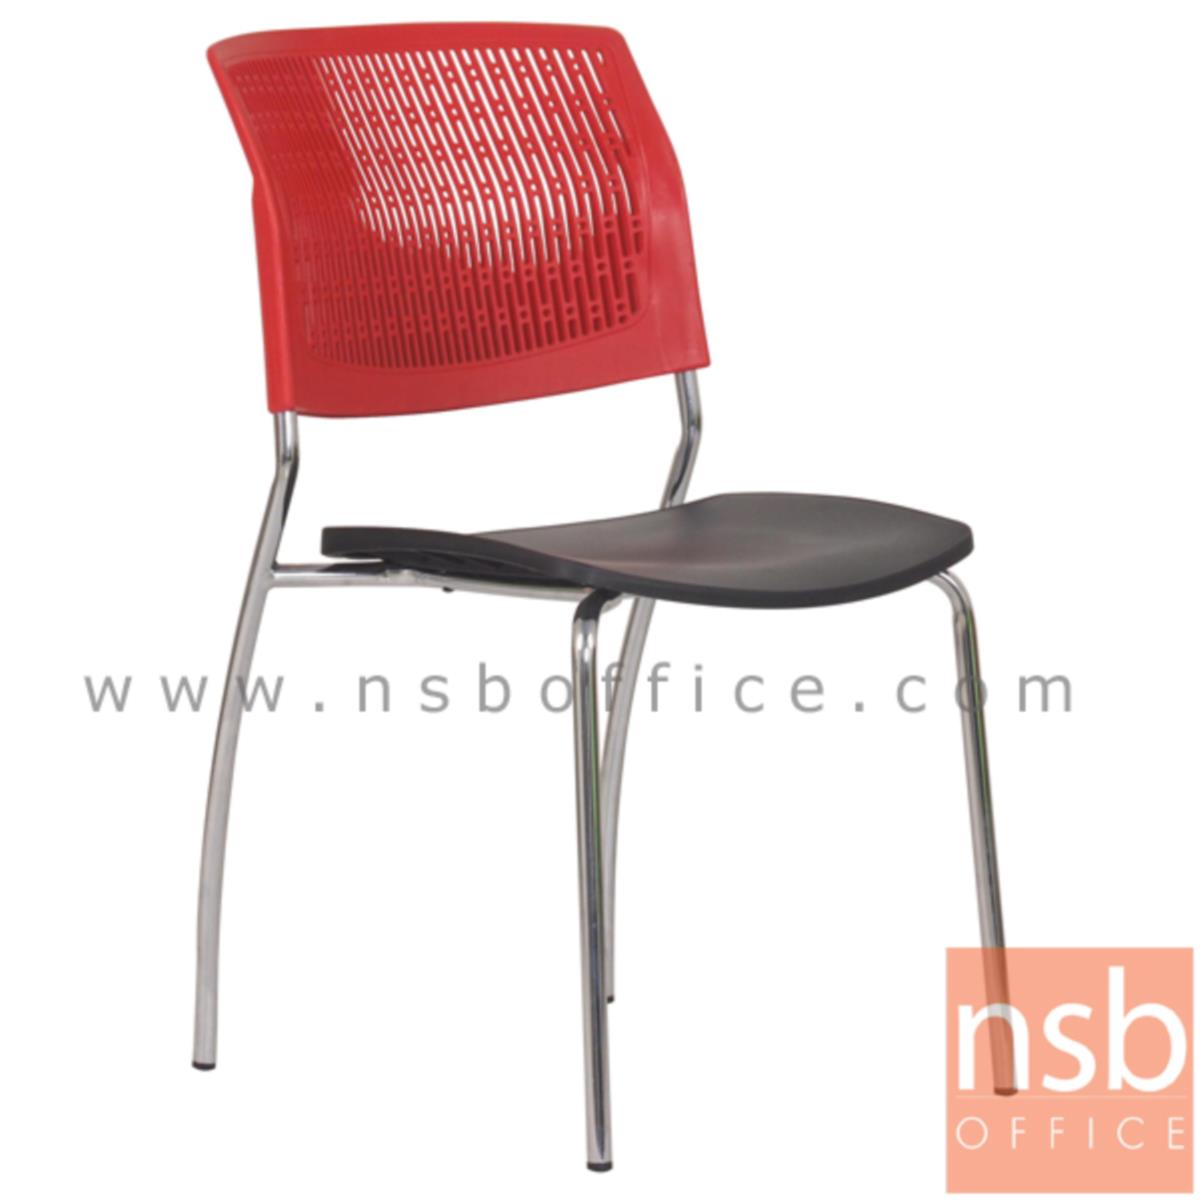 B04A143:เก้าอี้อเนกประสงค์เฟรมโพลี่ รุ่น MS011  ขาเหล็กชุบโครเมี่ยม